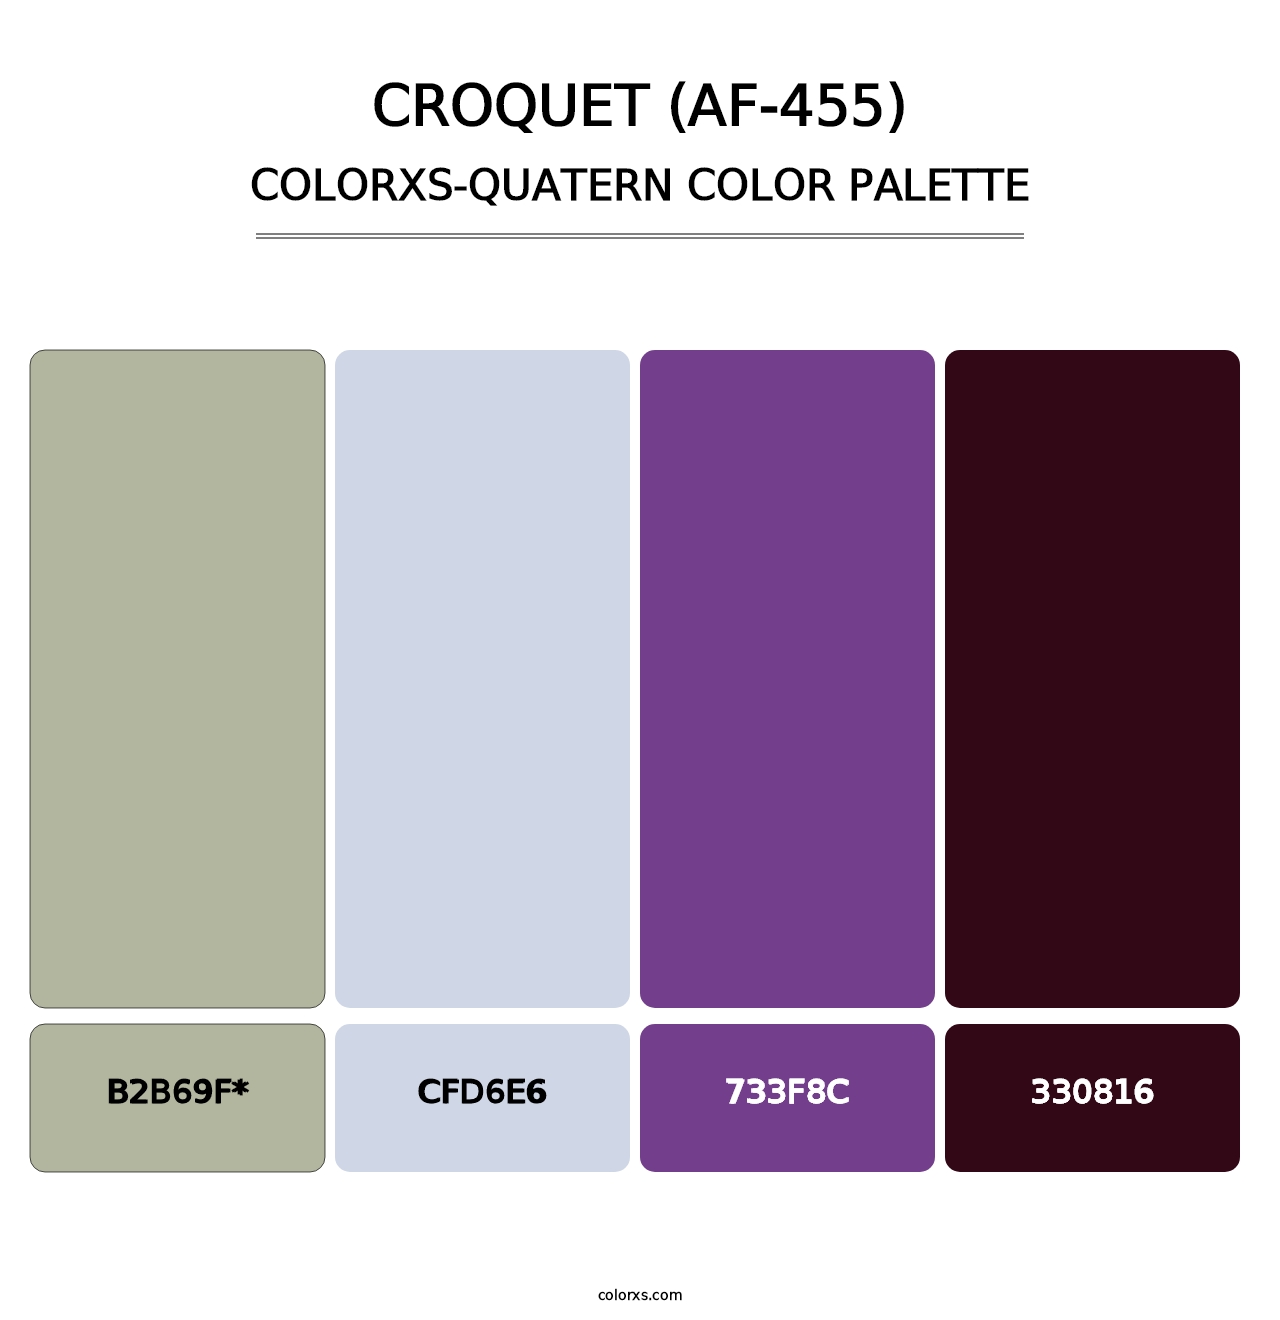 Croquet (AF-455) - Colorxs Quatern Palette